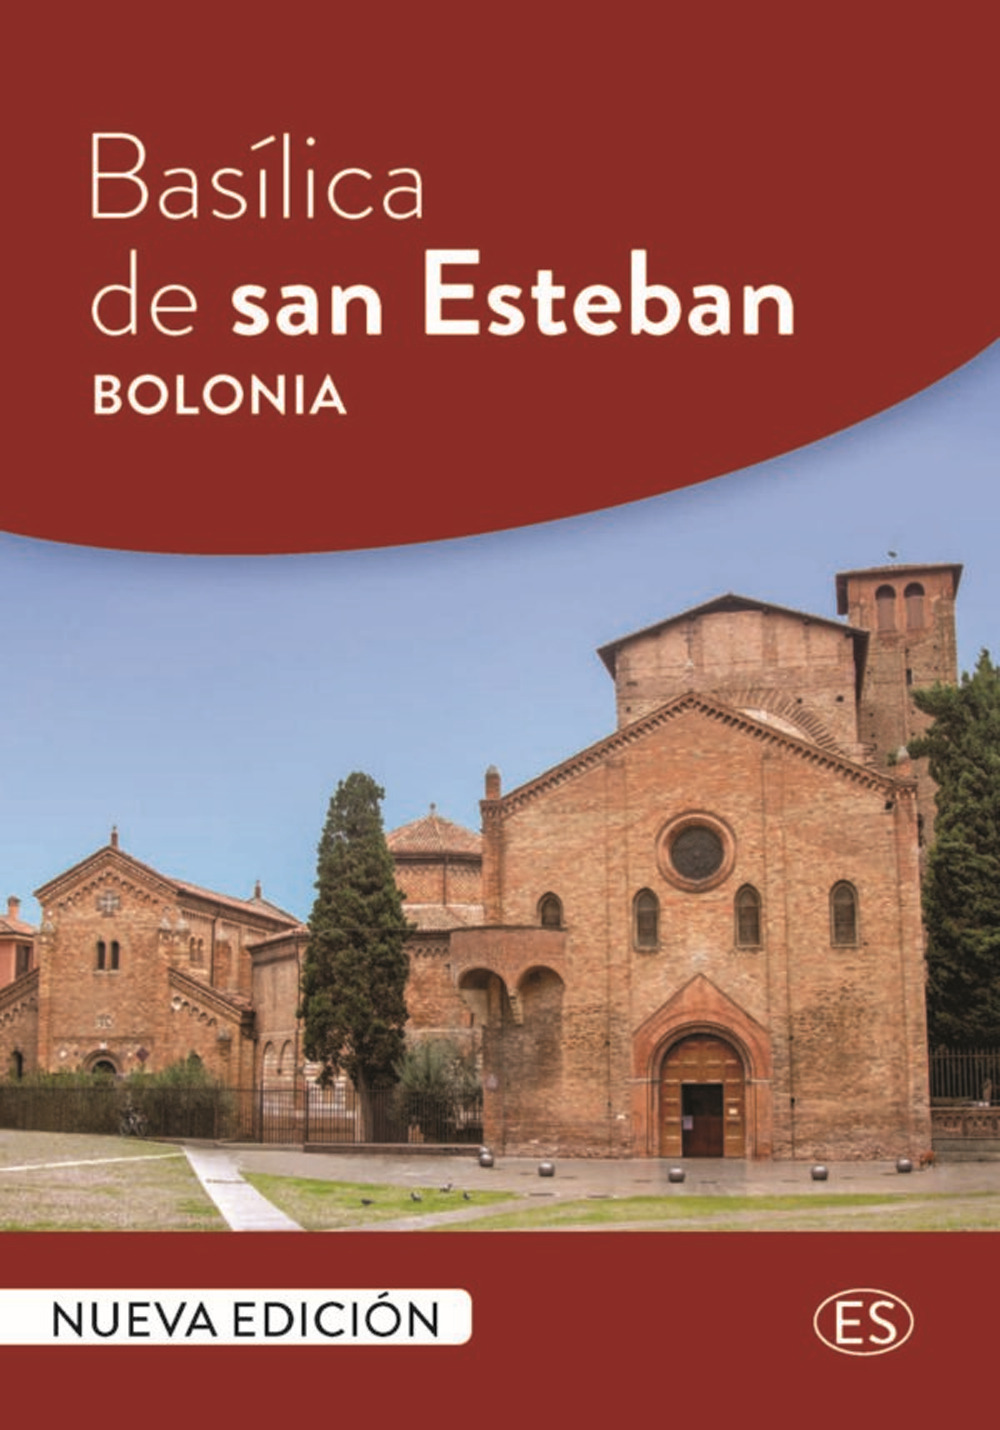 Basílica de san Esteban Bolonia